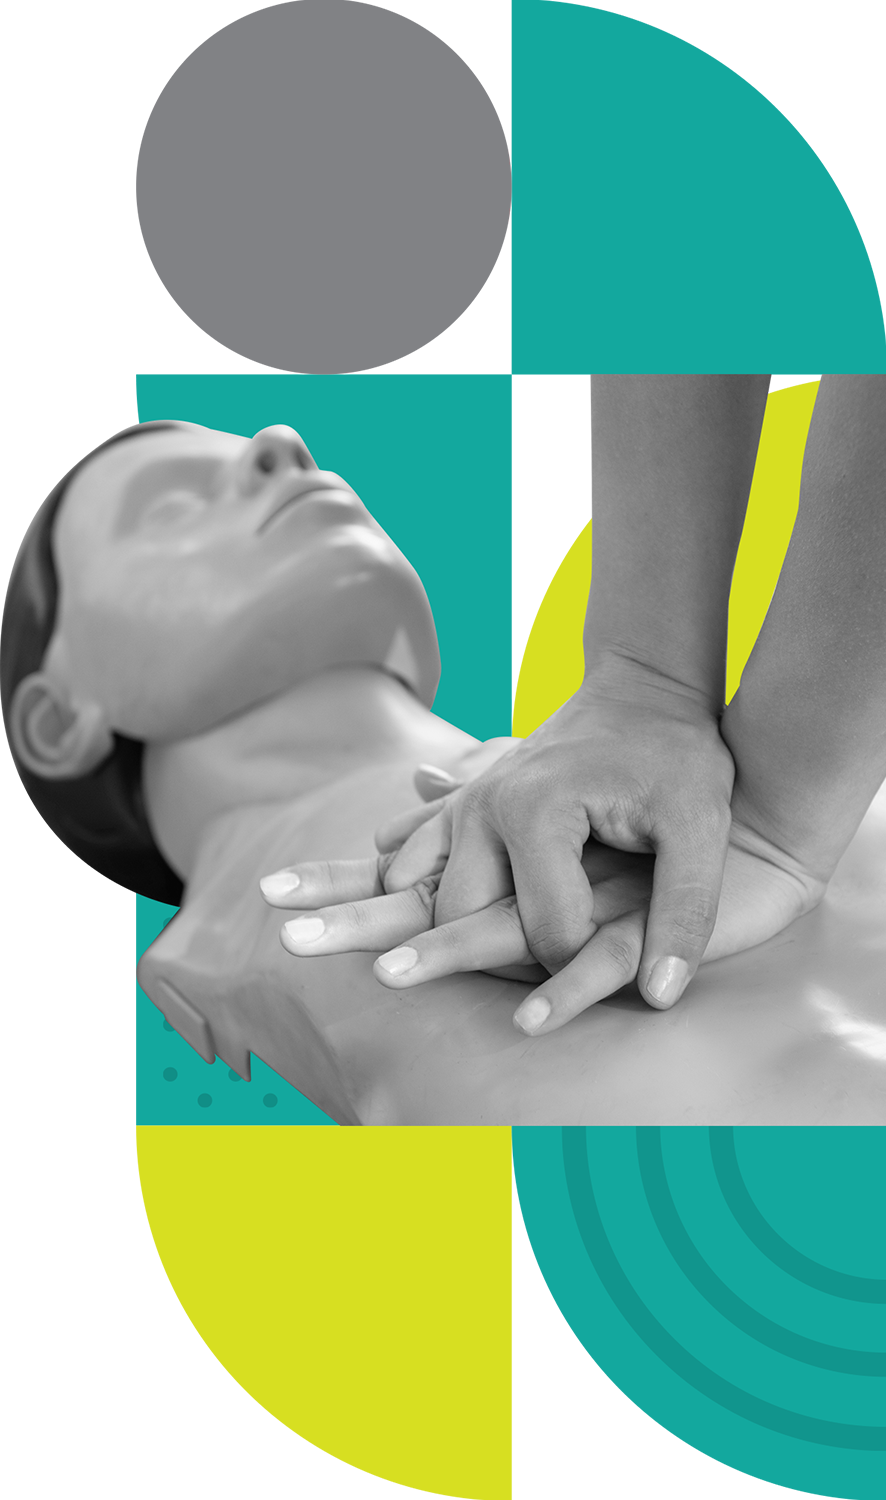 Hands on a CPR manikin